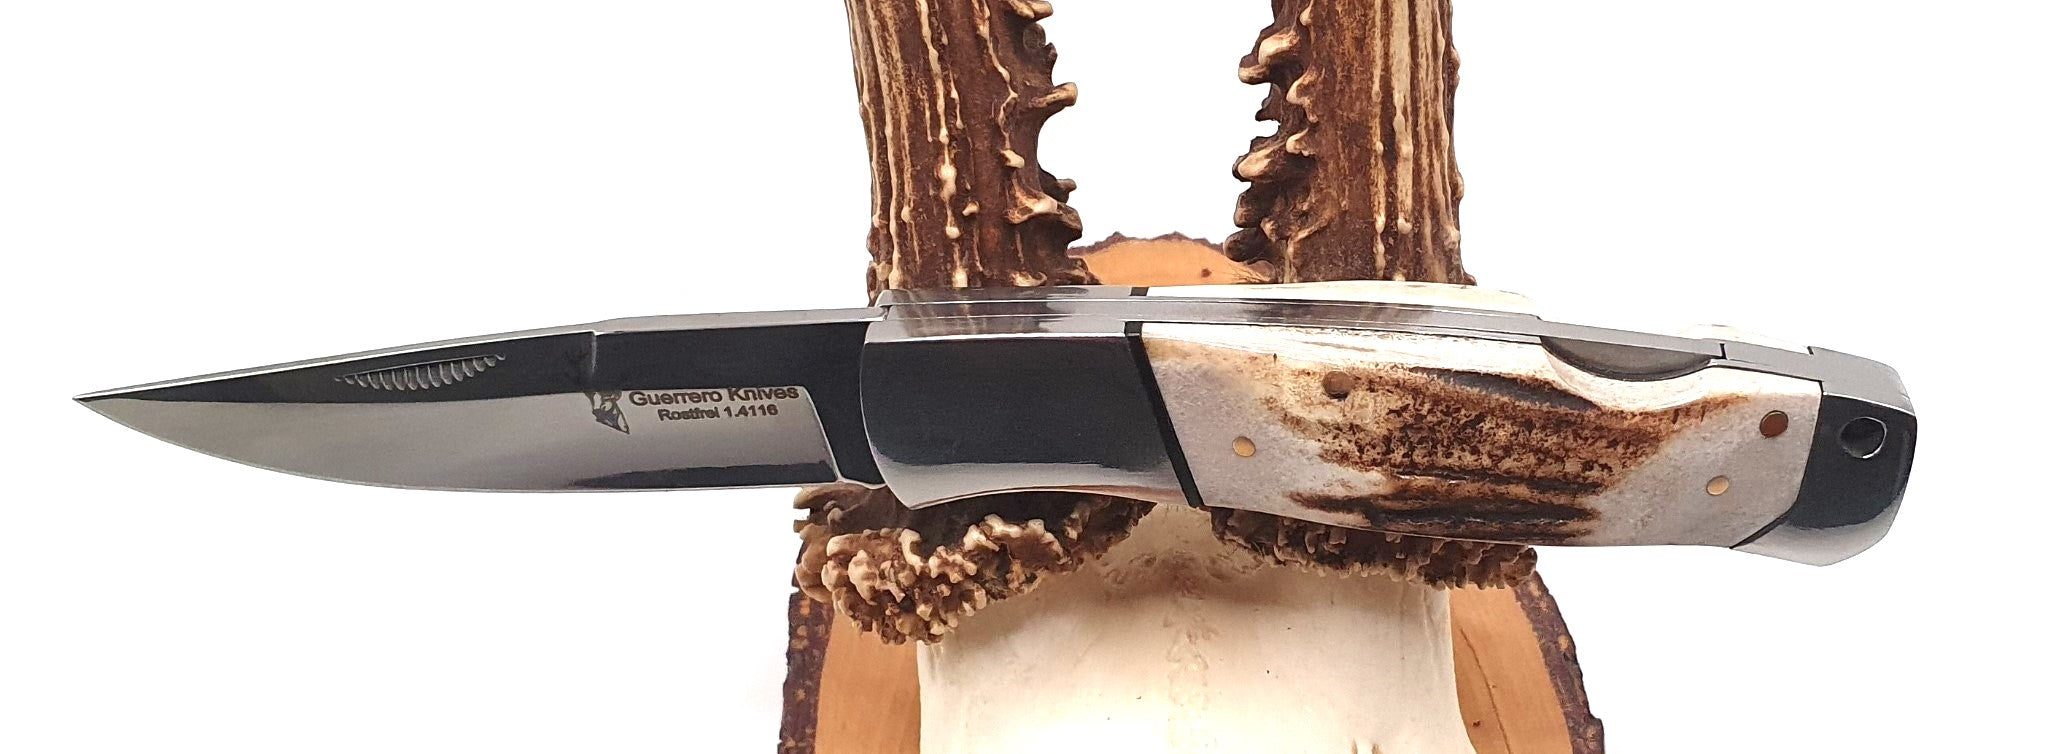 Hochwertiges und edles Guerrero Knives Taschenmesser / Integralmesser mit Hirschhorngriff